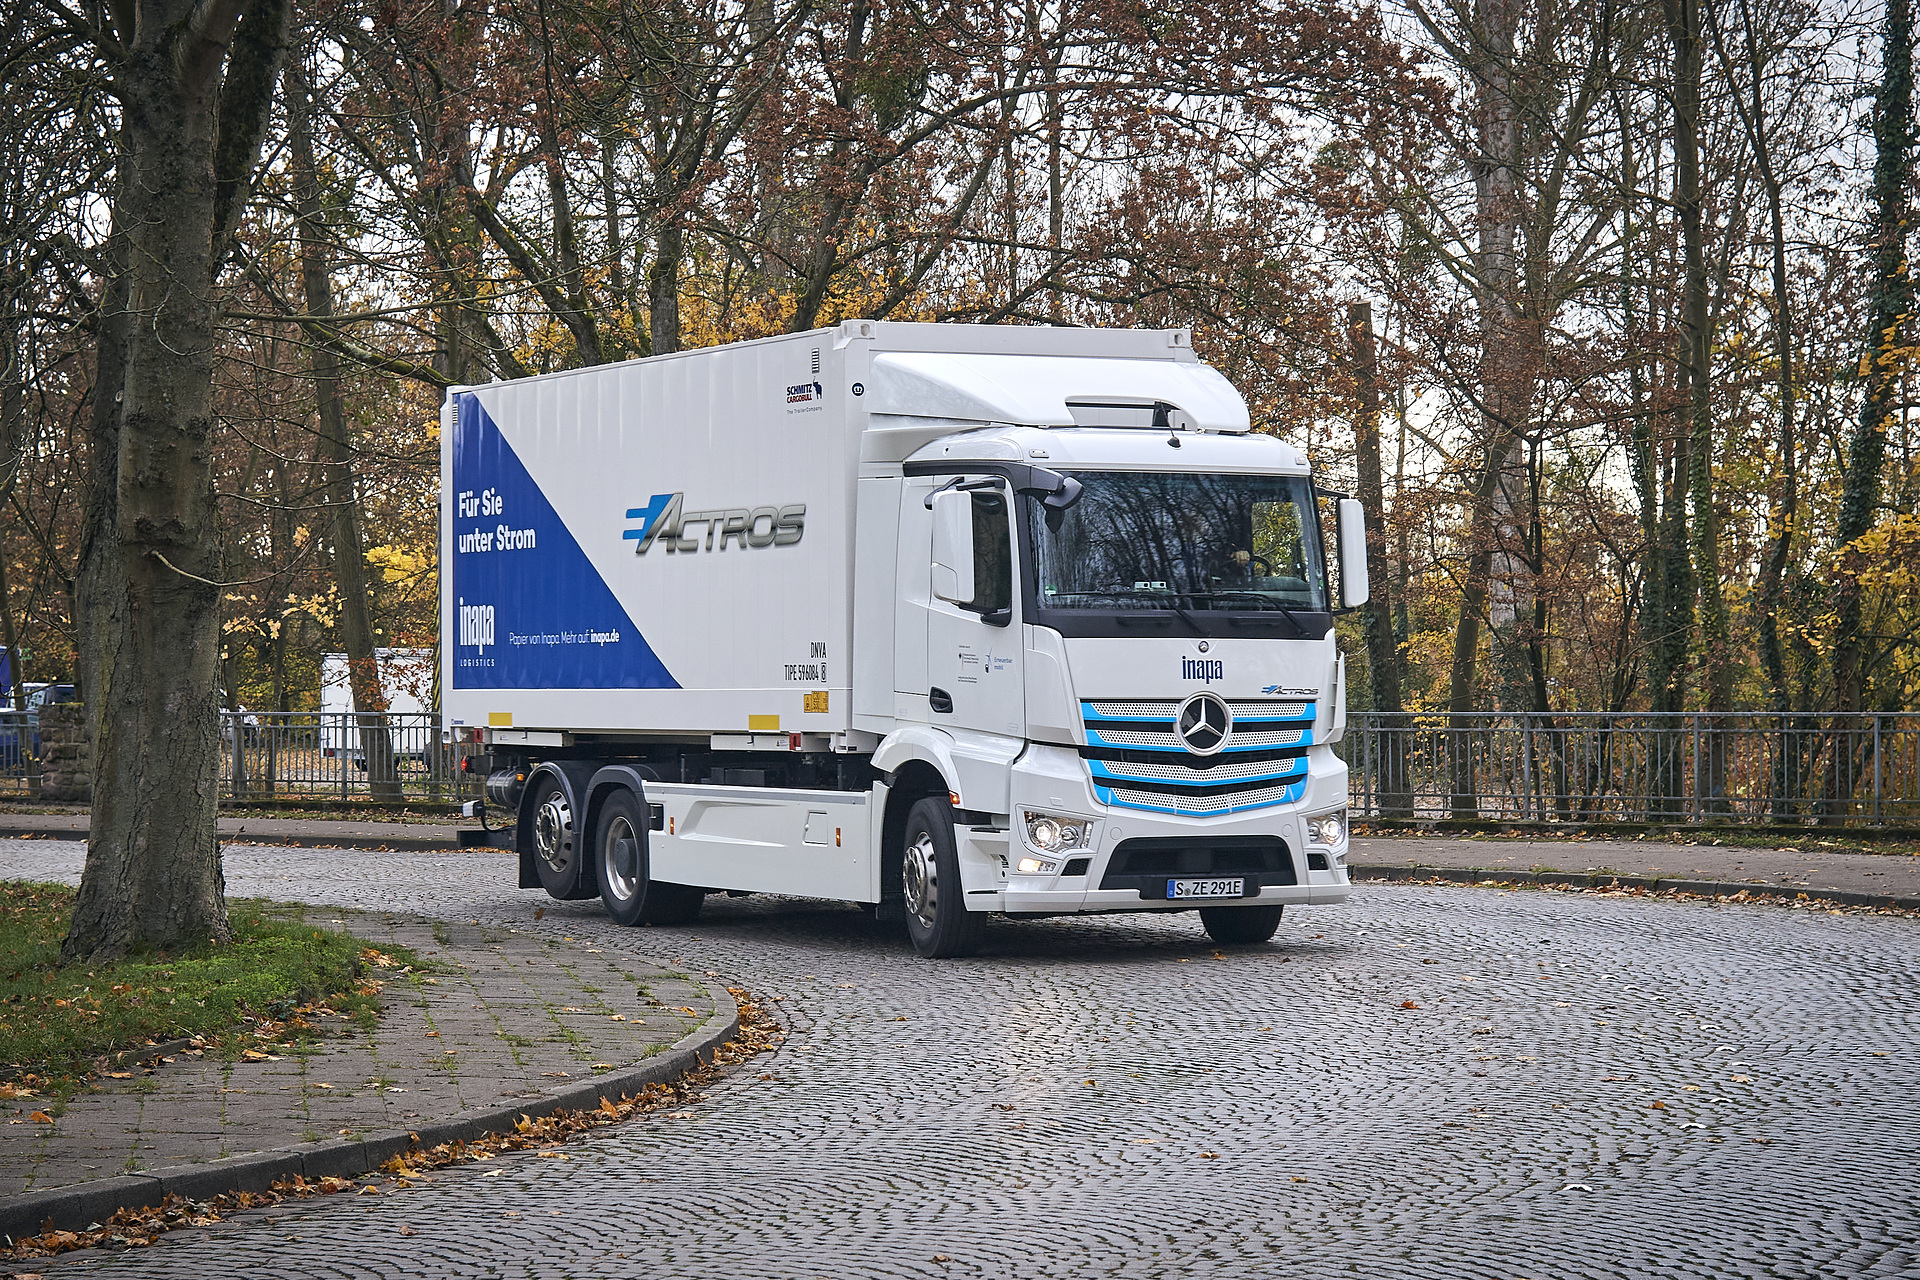 Vollelektrischer eActros jetzt in der Region Karlsruhe: Inapa Deutschland GmbH testet E-Lkw von Mercedes-Benz im Papiergroßhandel